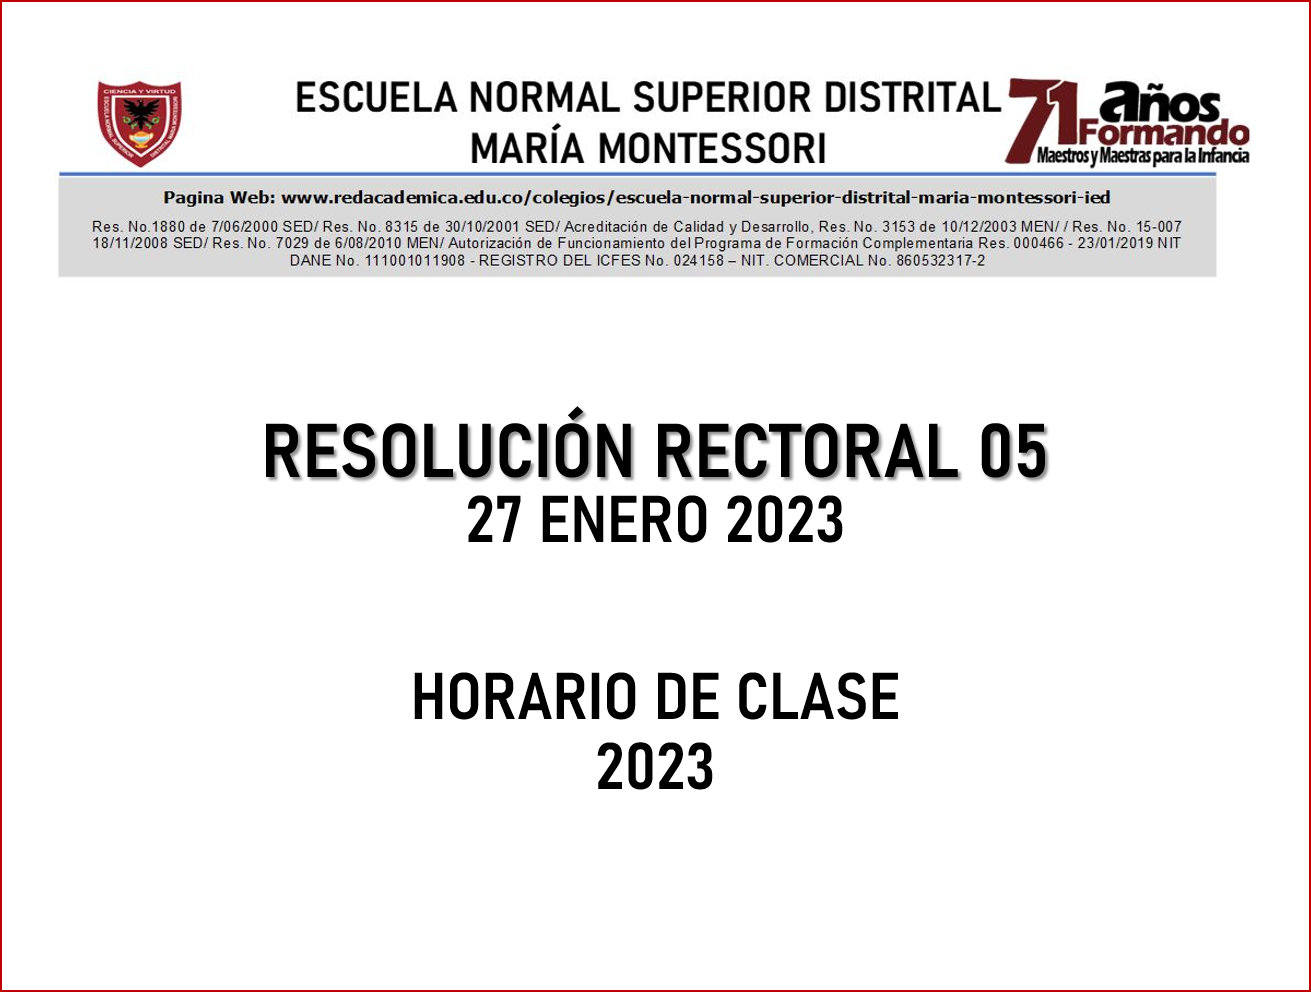 RESOLUCIÓN RECTORAL 05 Horario de clases 2023